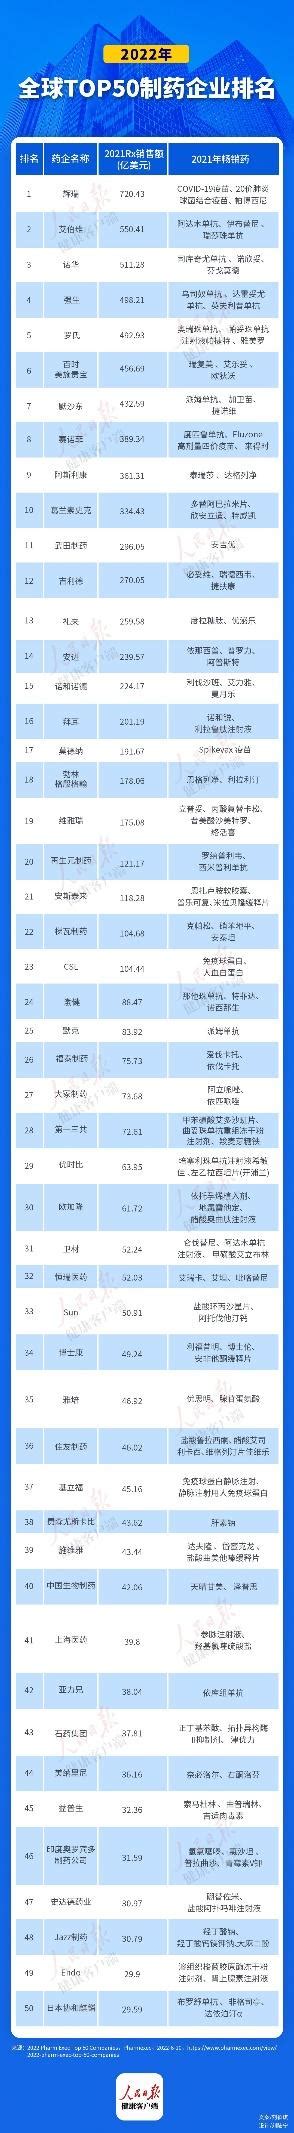 中国制药企业排名2017_中国制药企业排名 - 随意优惠券